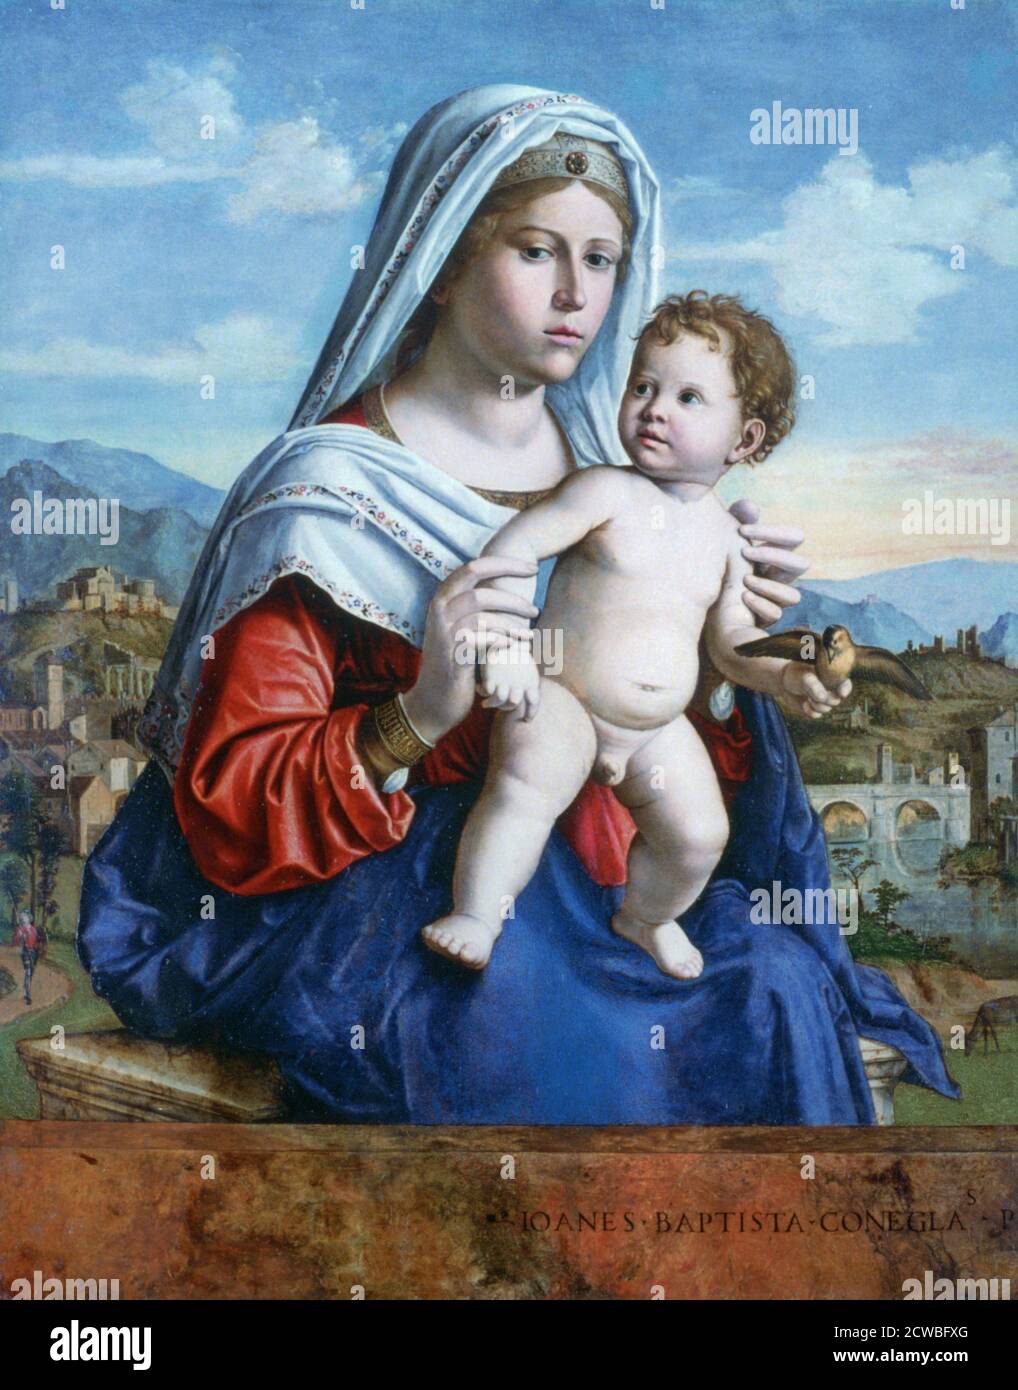 Die Jungfrau und das Kind', c1505. Künstler: Giovanni Battista Cima da Conegliano. Giovanni Battista Cima da Conegliano (1459-1517) war ein italienischer Renaissance-Maler, der vor allem in Venedig arbeitete. Stockfoto